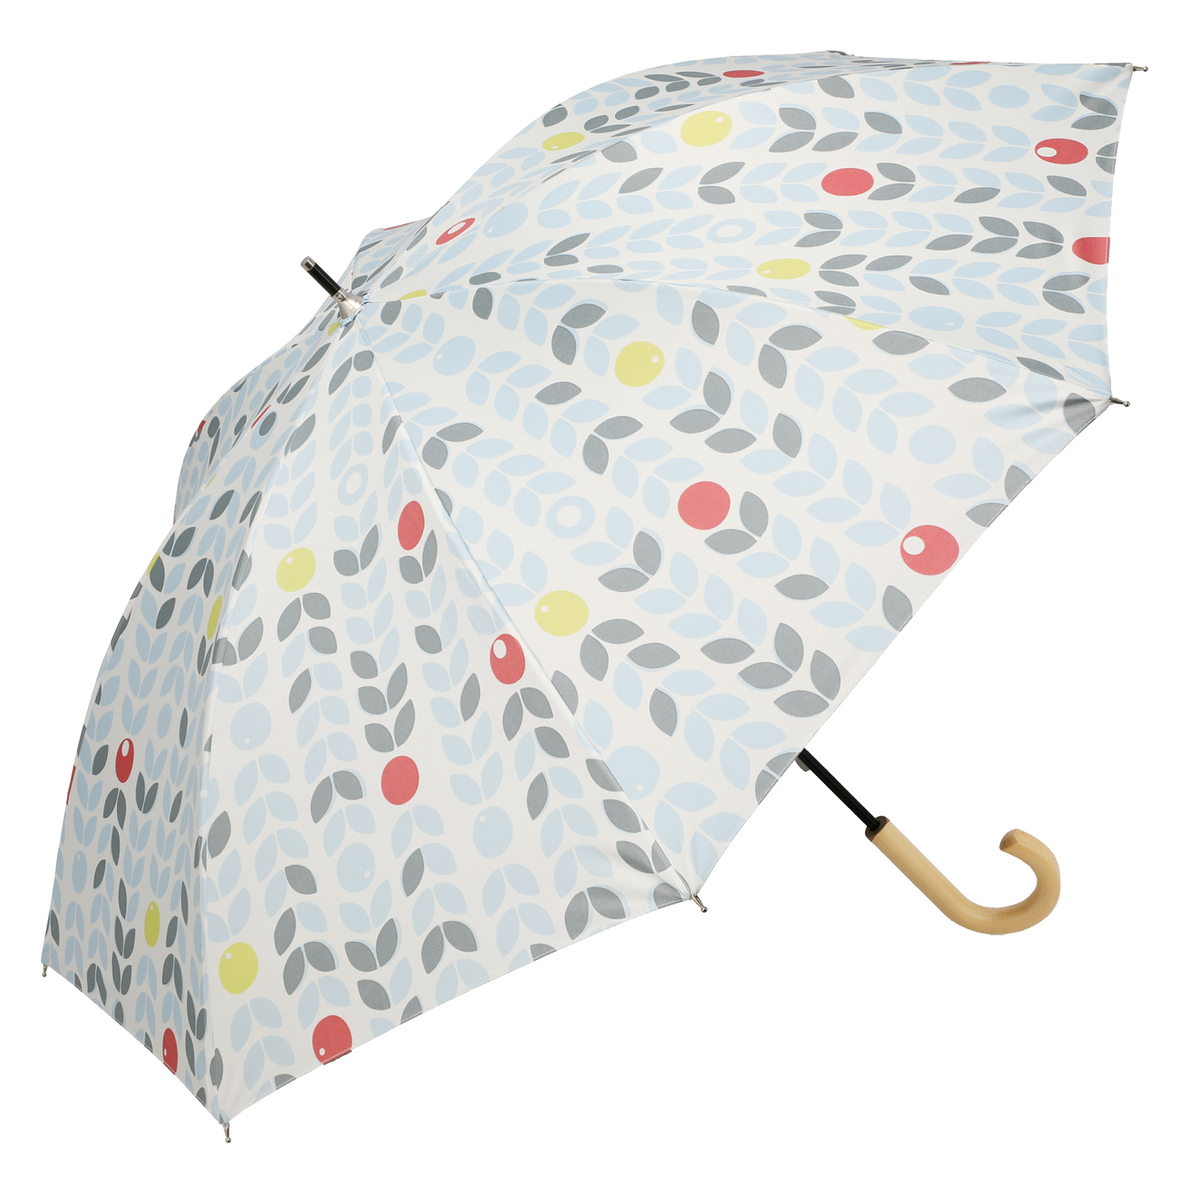  ルナジュメール UV+1級遮光+晴雨兼用 プリントショート傘  北欧柄オフホワイト